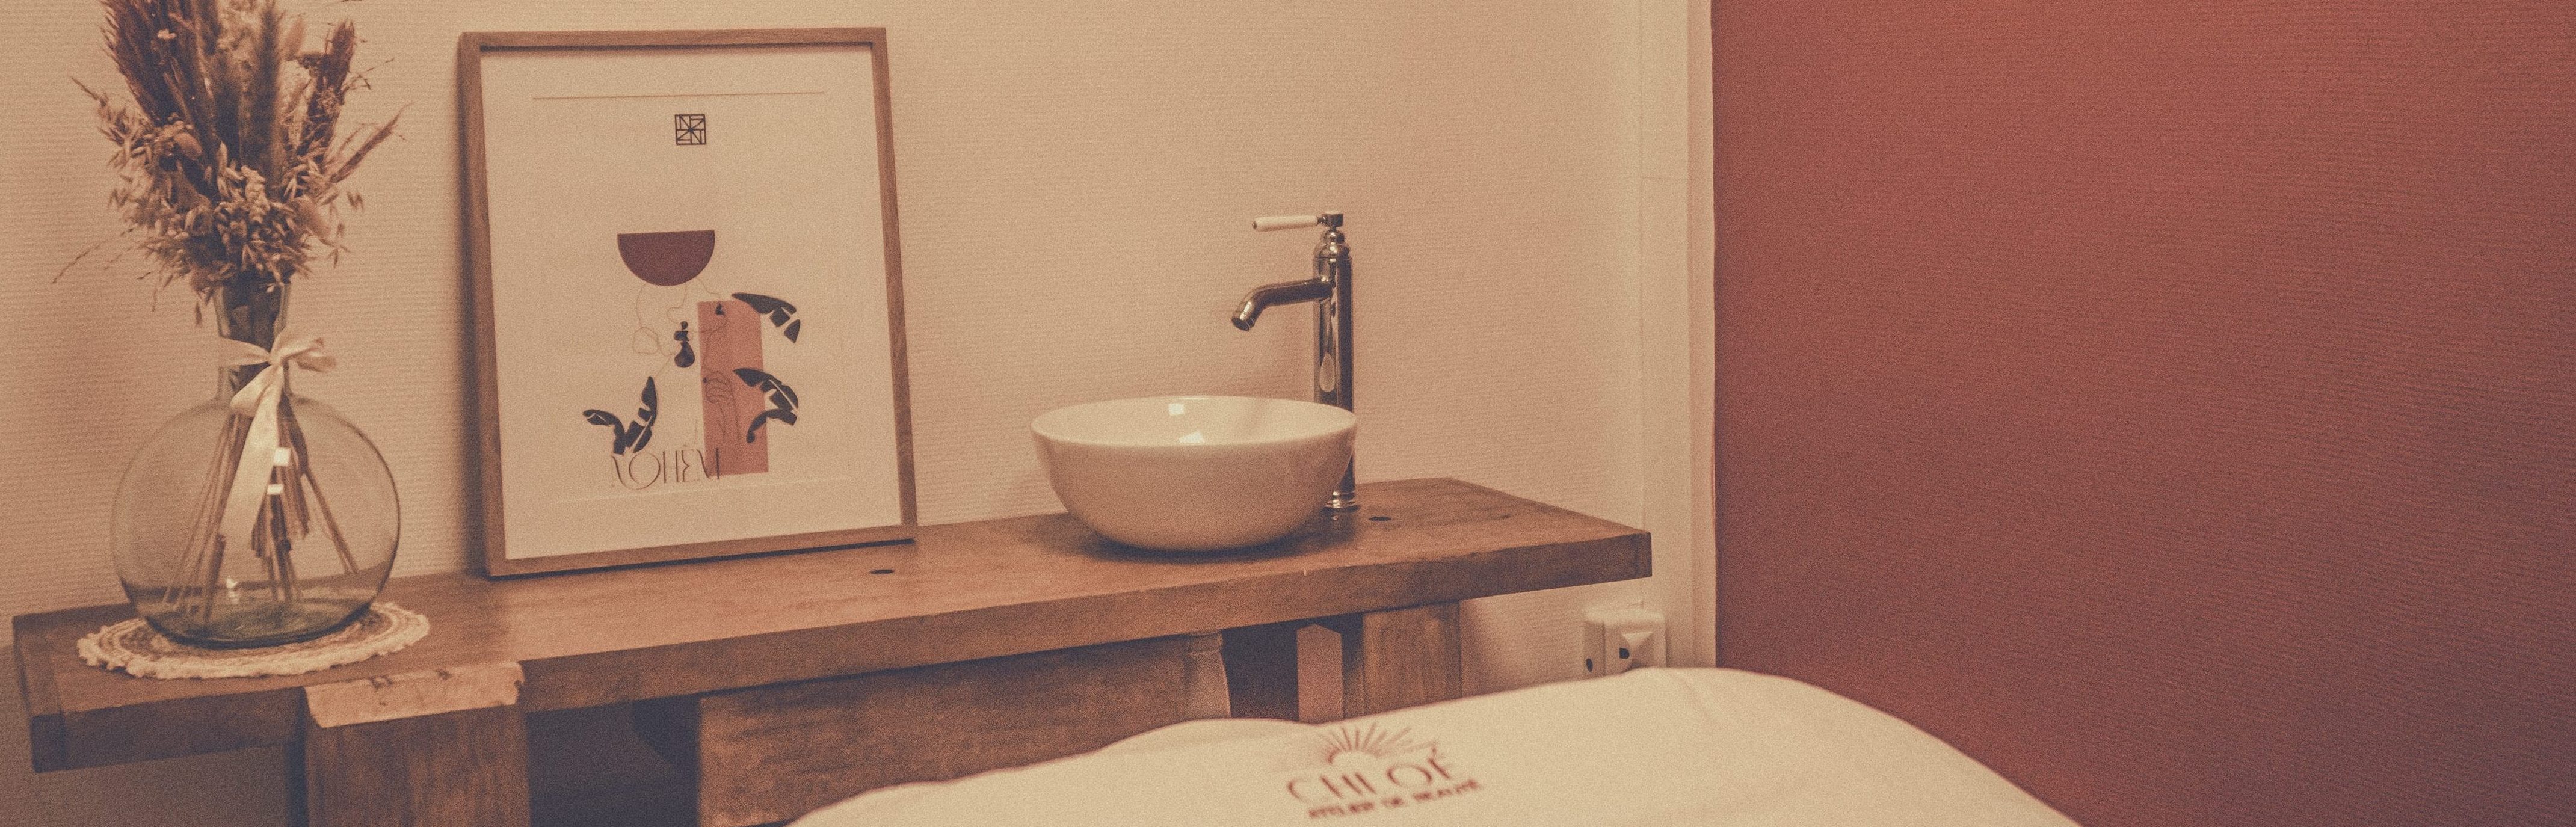 Photographie représentant une partie de la salle de massage, on y voit un établi servant de vasque ainsi que des fleurs séchées. L'ambiance est chaleureuse.